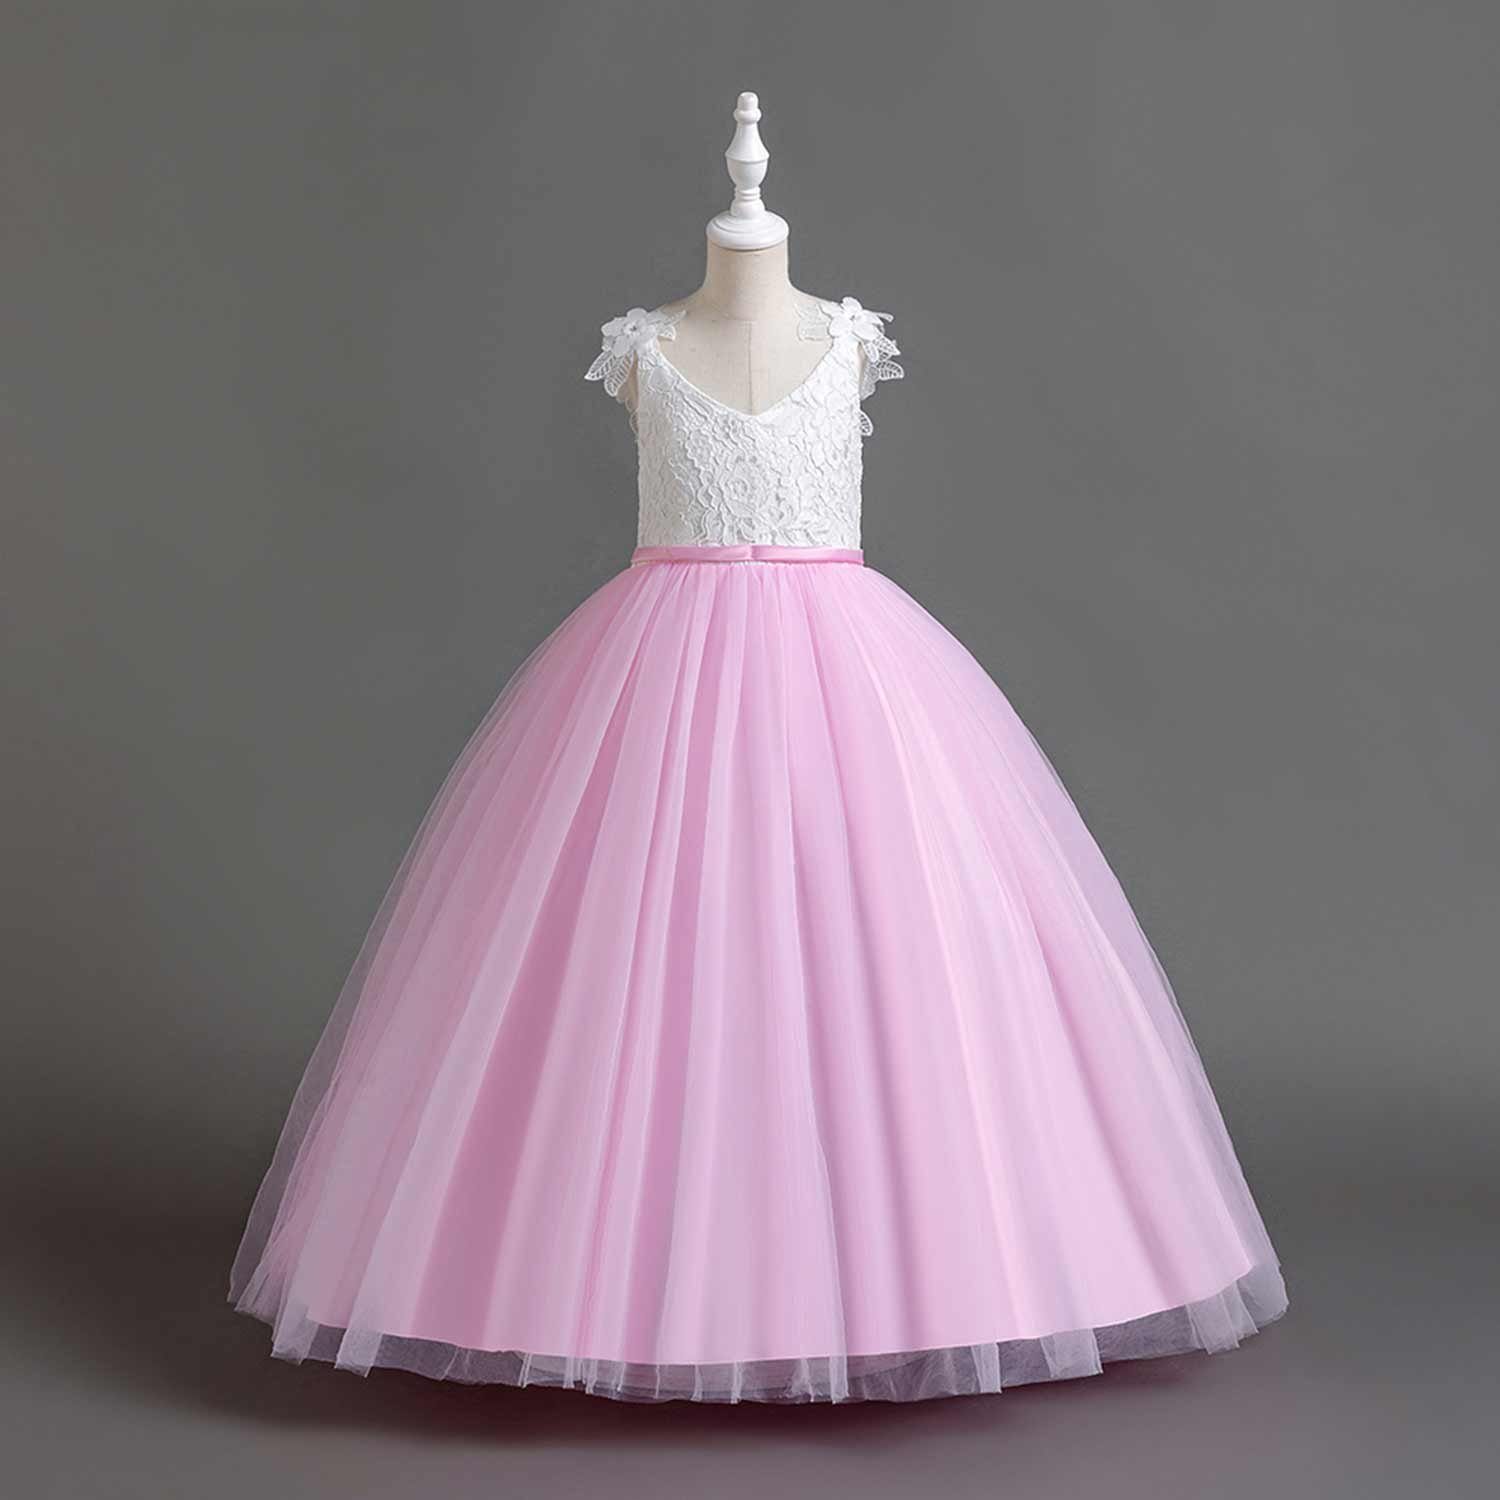 Daisred Abendkleid Prinzessinnenkleider Abendkleider Blumenmädchen Rosa Tüllkleider